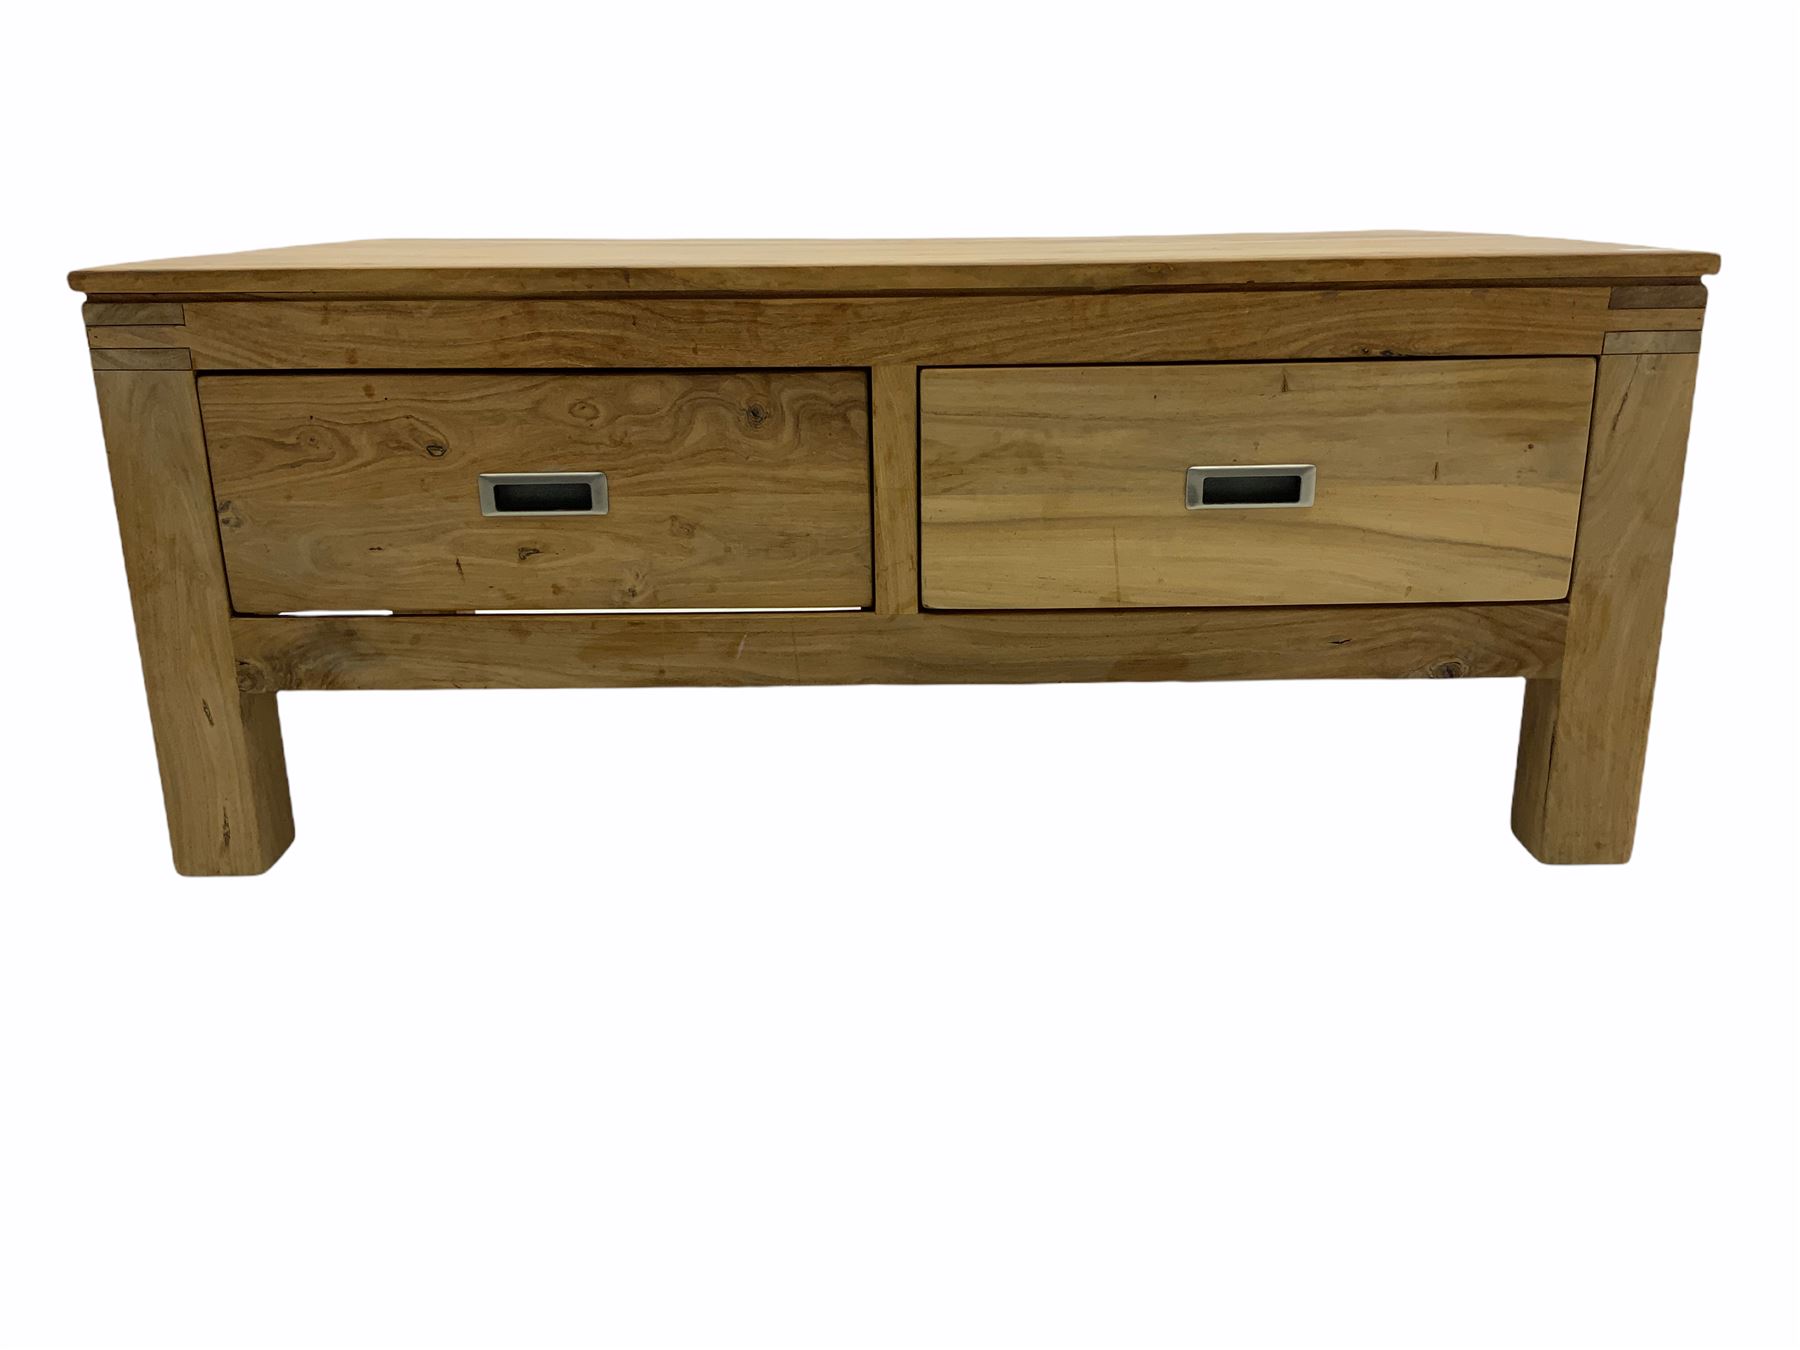 Hardwood rectangular coffee table - Image 2 of 3